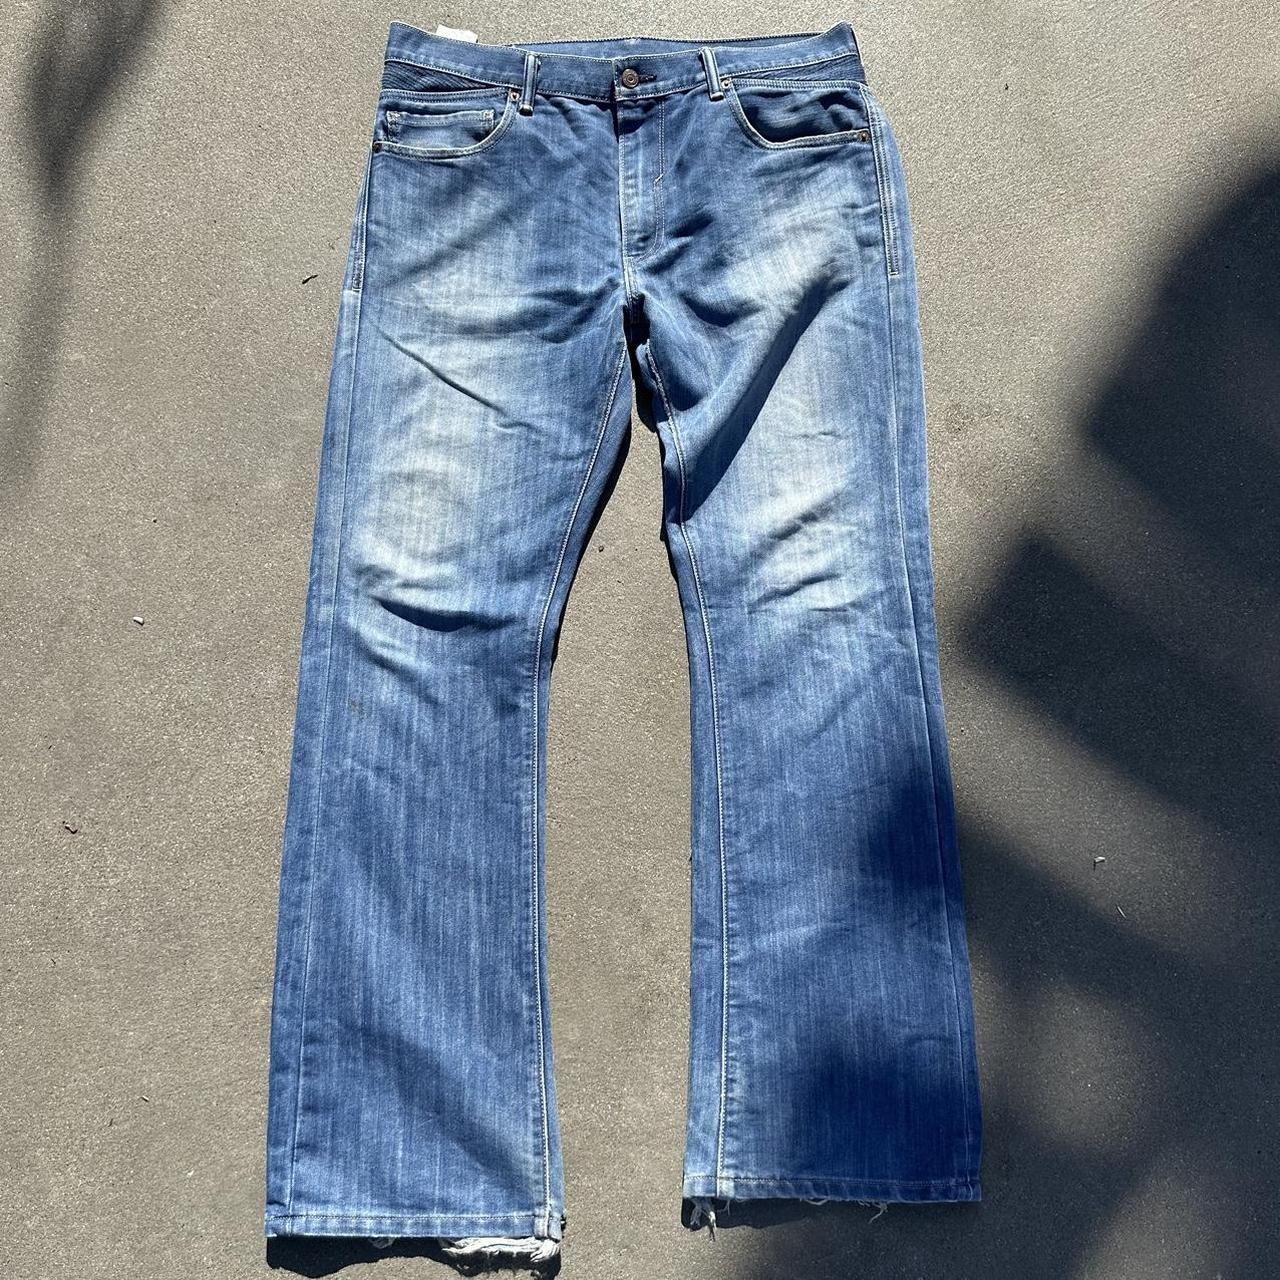 Levi’s 527 Jeans | Size 36/32 | Amazing condition |... - Depop